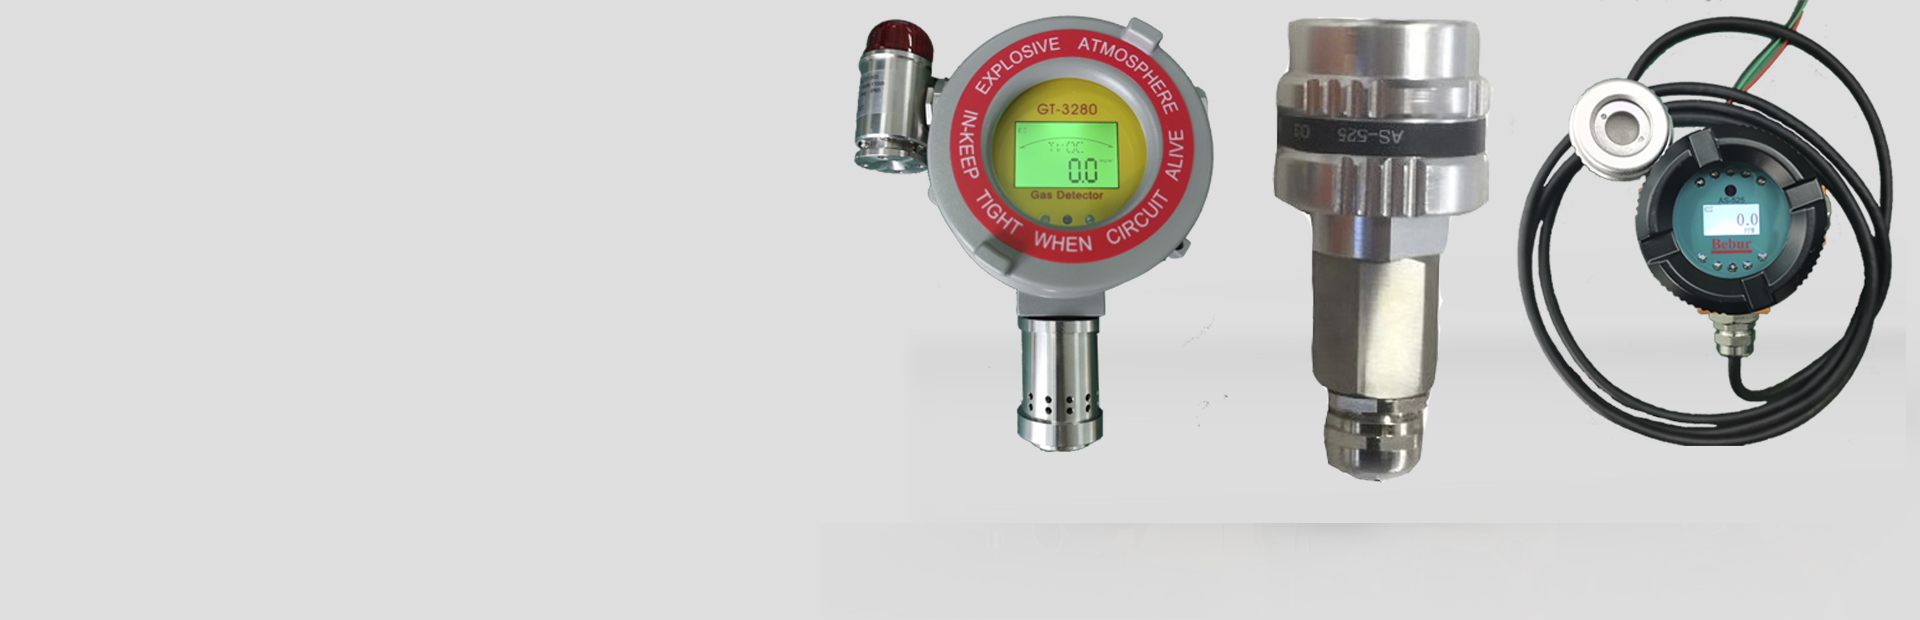 BT6308-OZ水中臭氧浓度仪系列产品